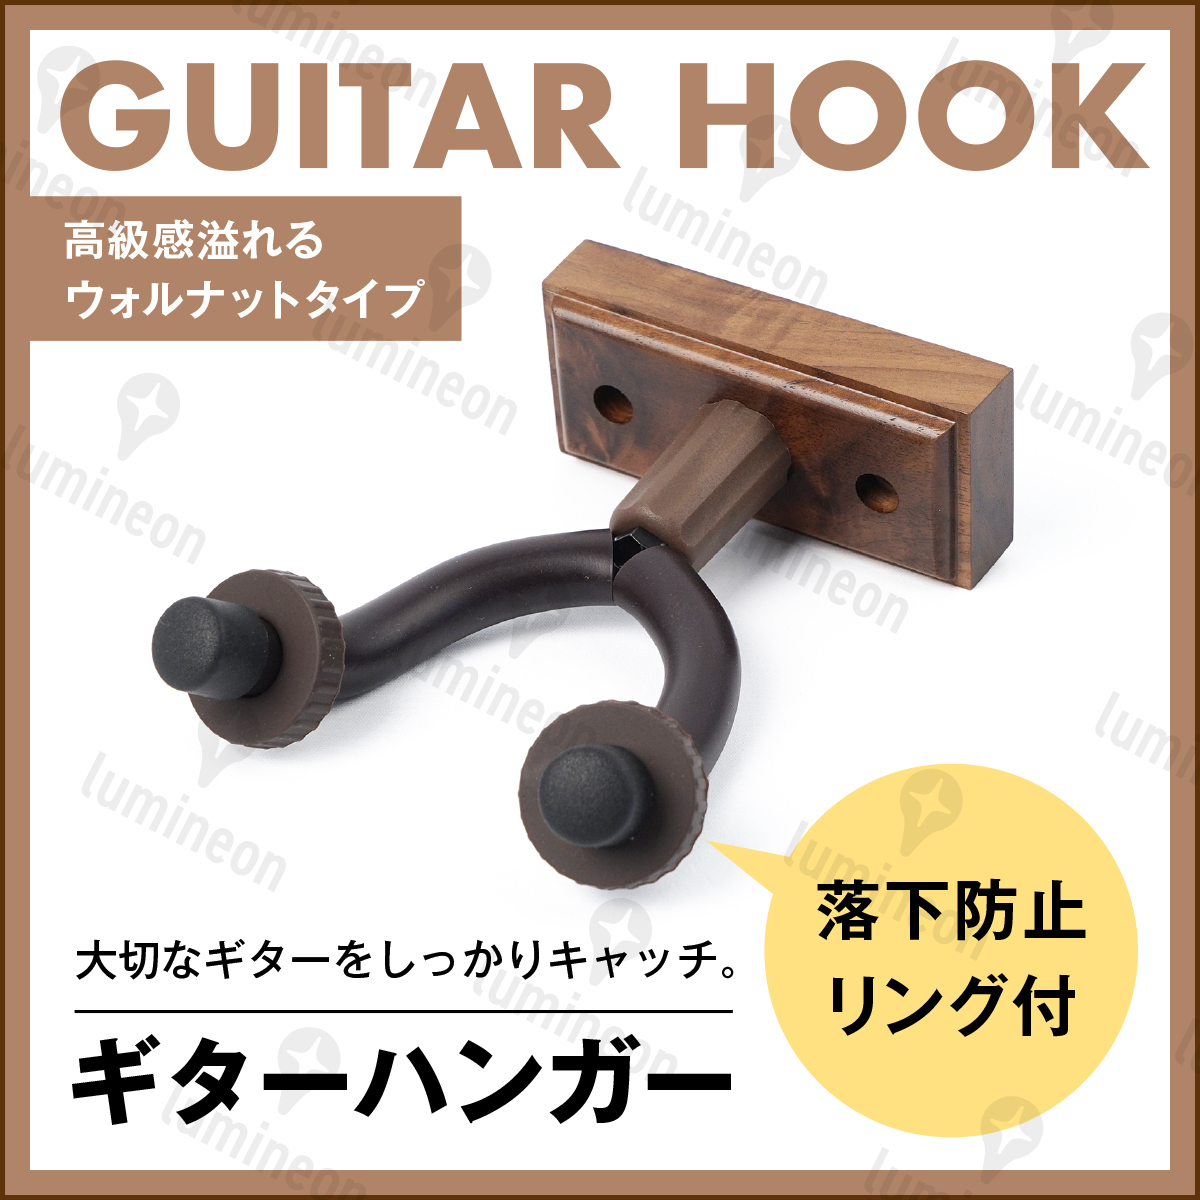 Гитарная вешалка базовая винт с винтами натуральный деревянный держатель настенный крючок крюк